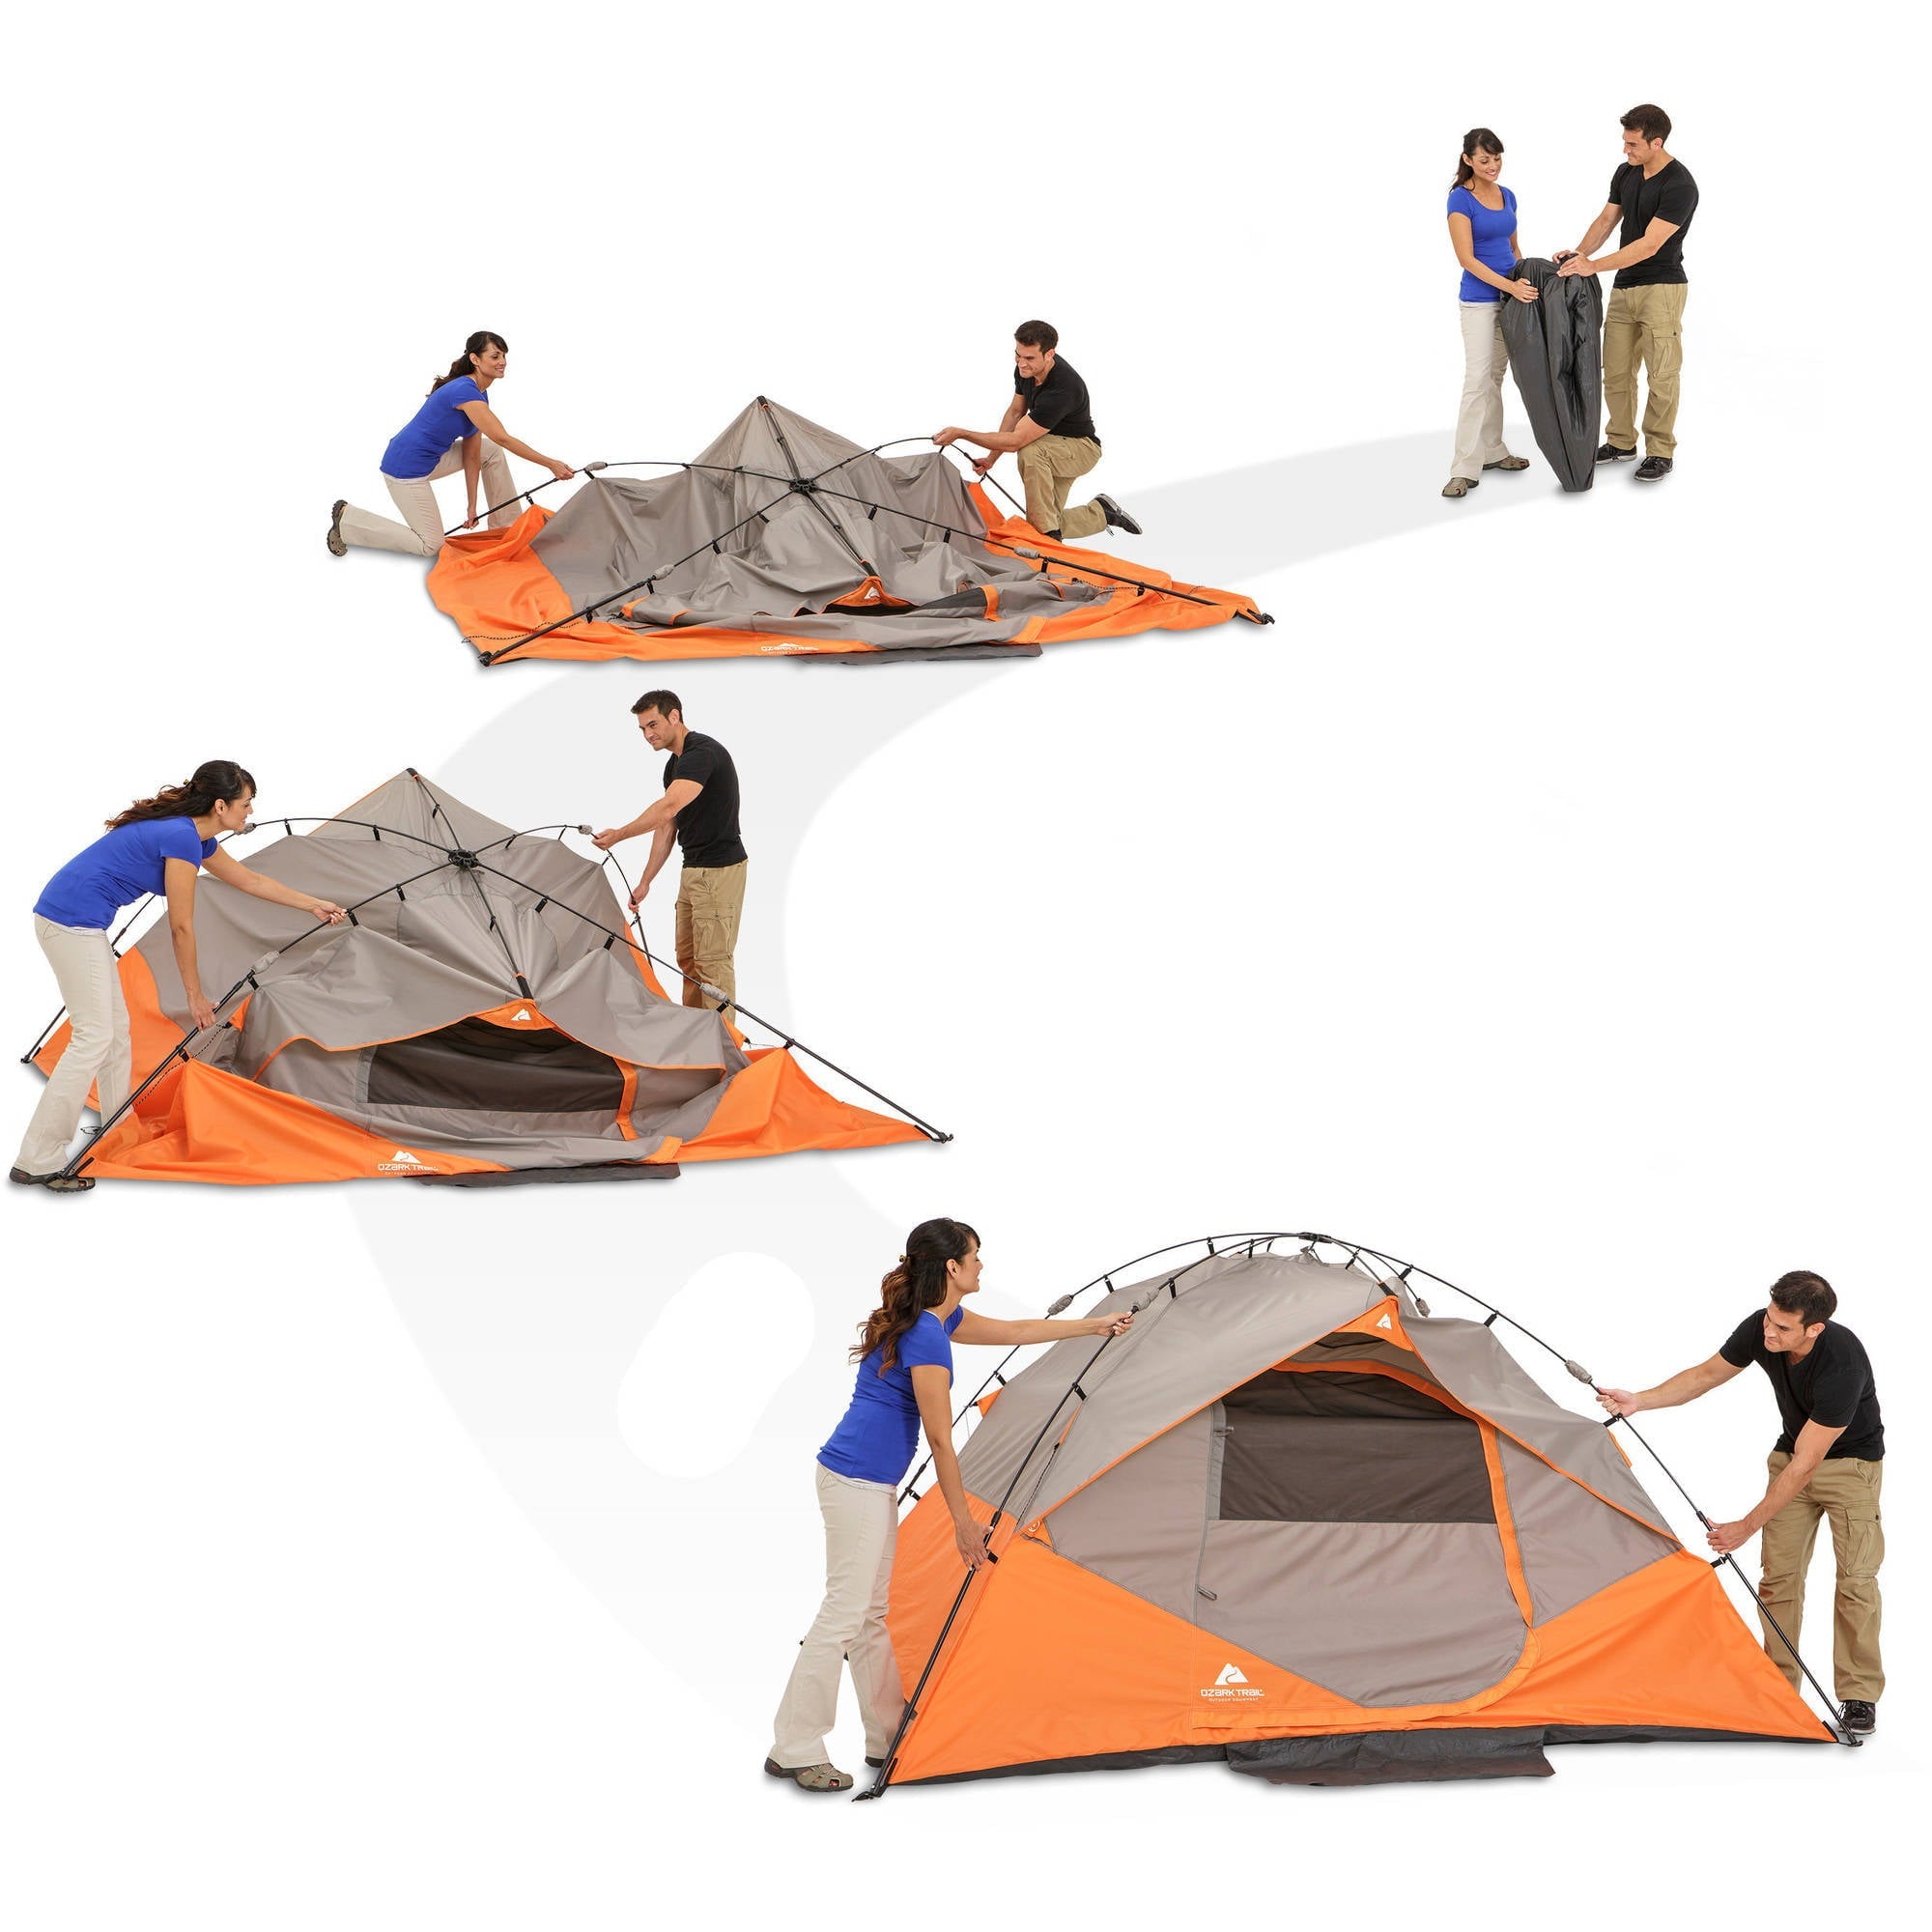 Ozark Trail 6-Person Instant Dome Tent, 10' x 9'